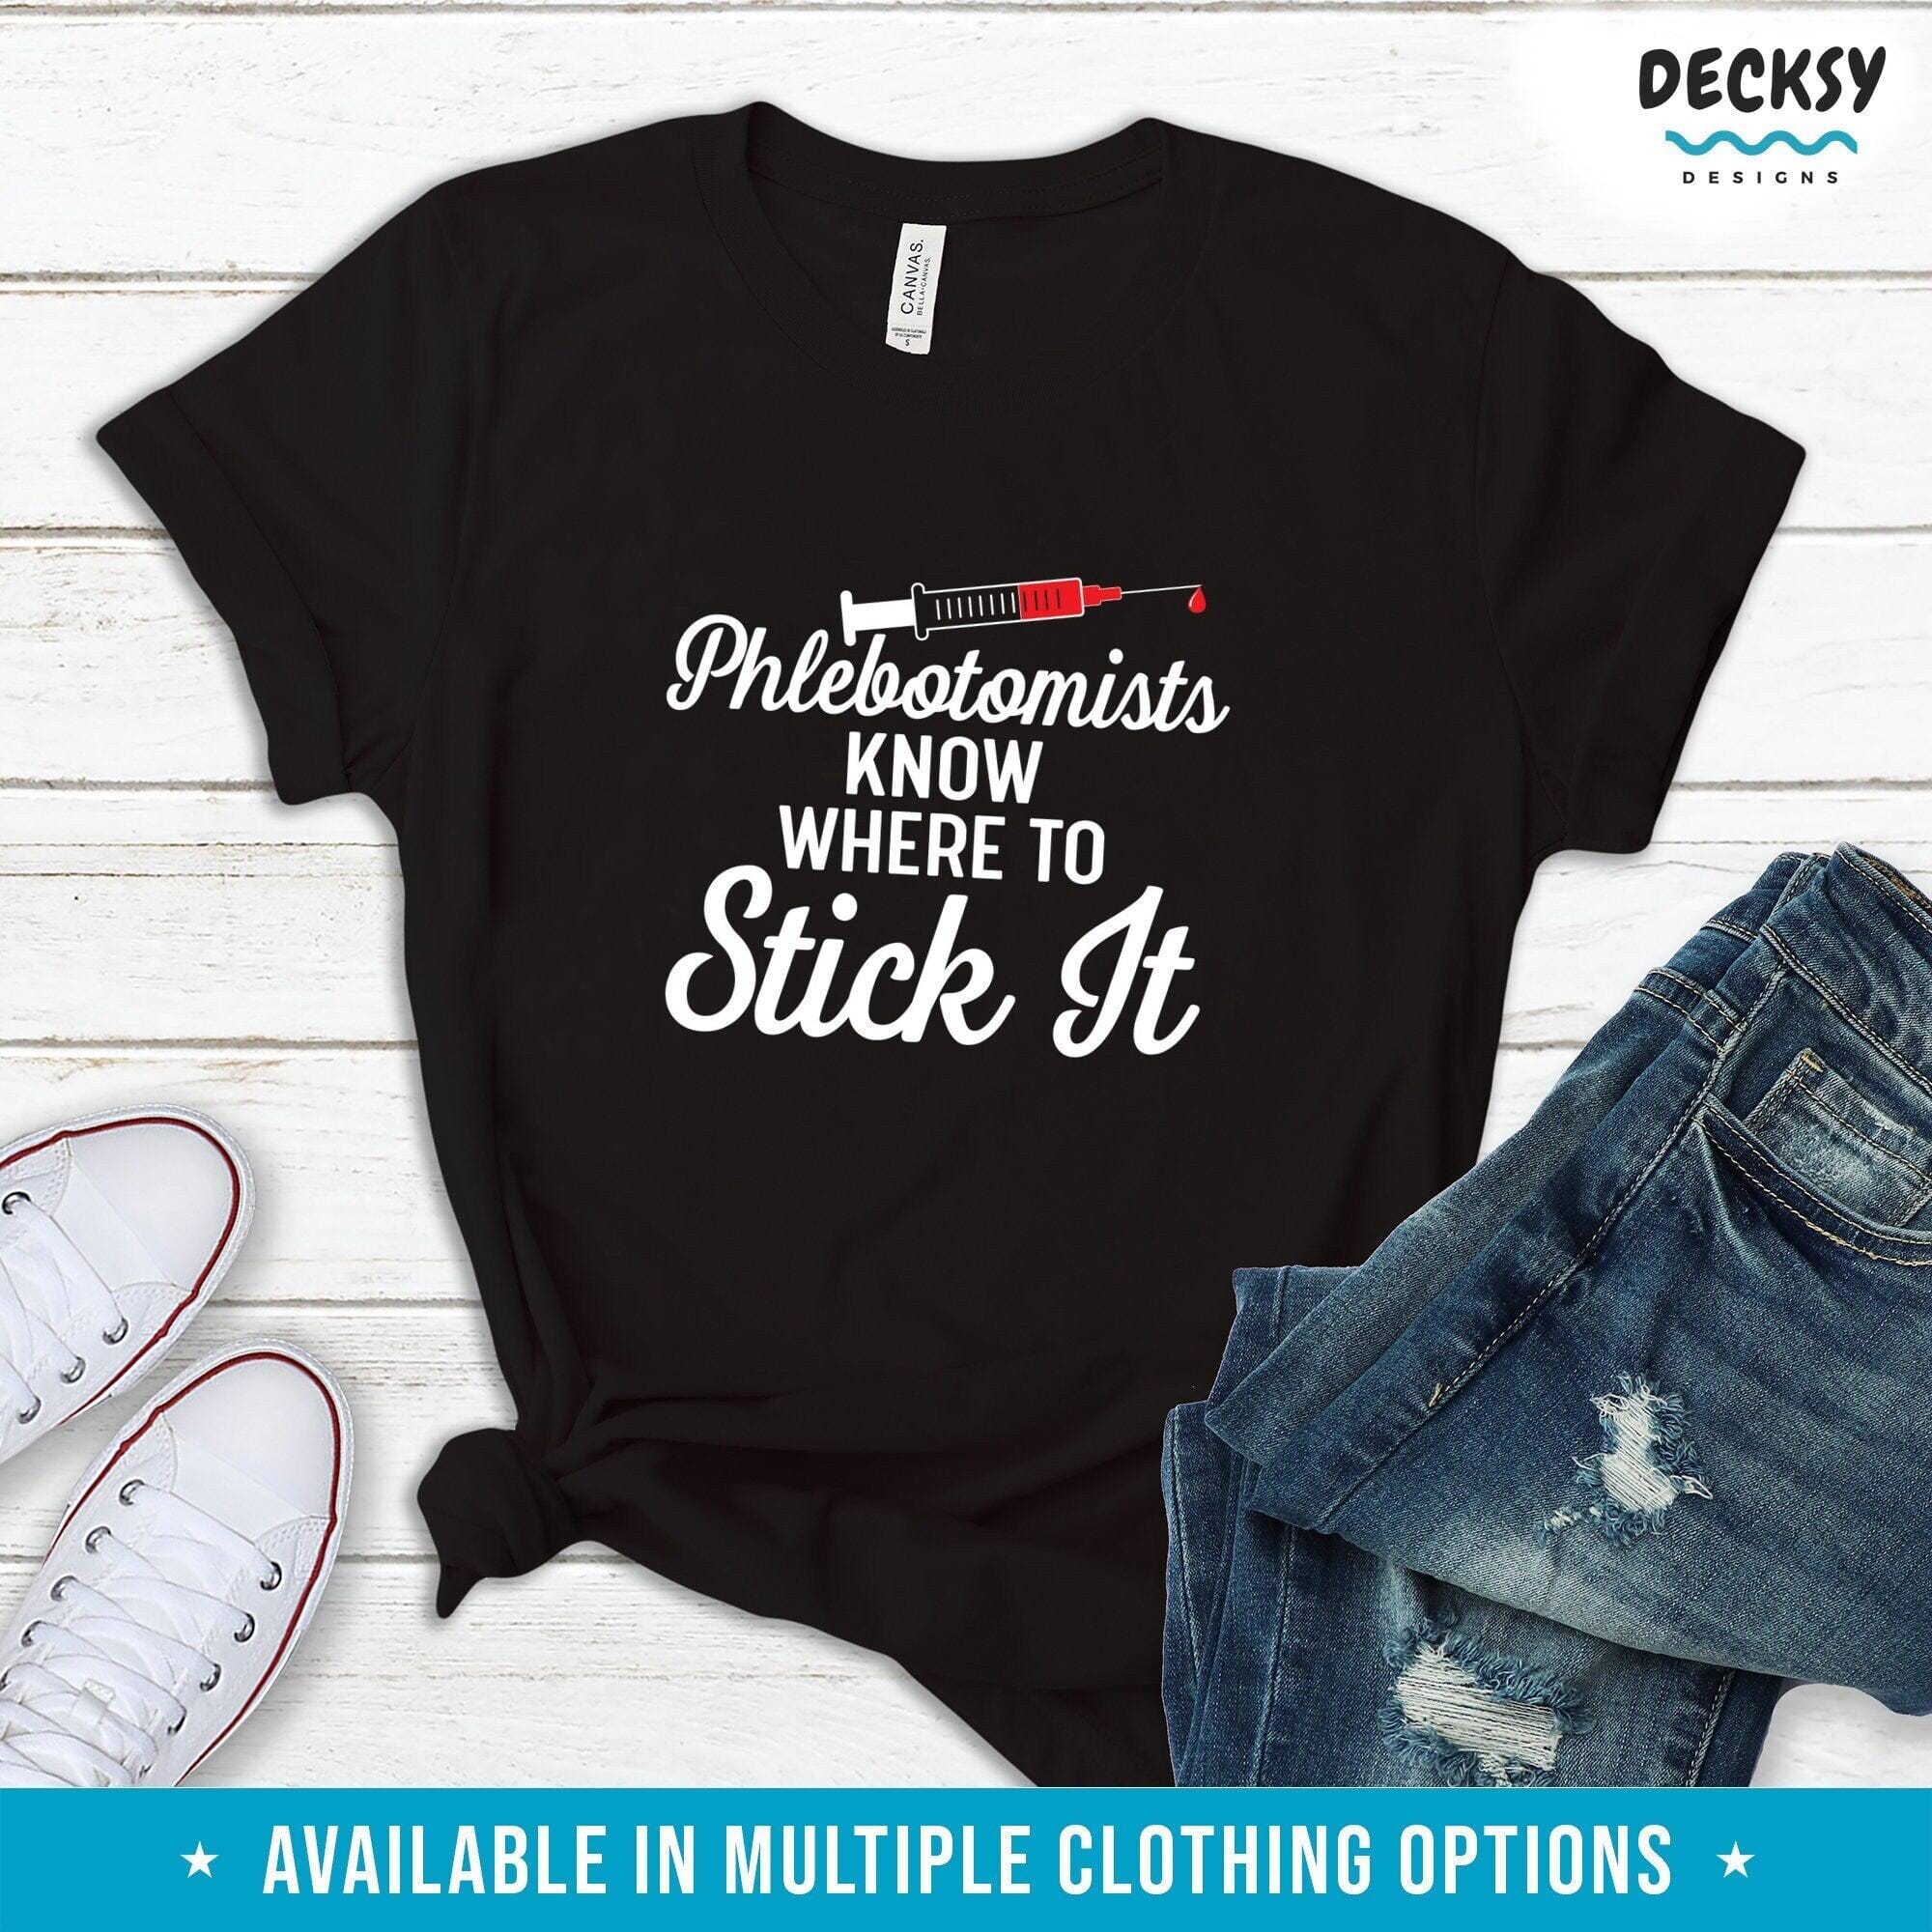 Phlebotomist T Shirt, Scientist Gift | DecksyDesigns